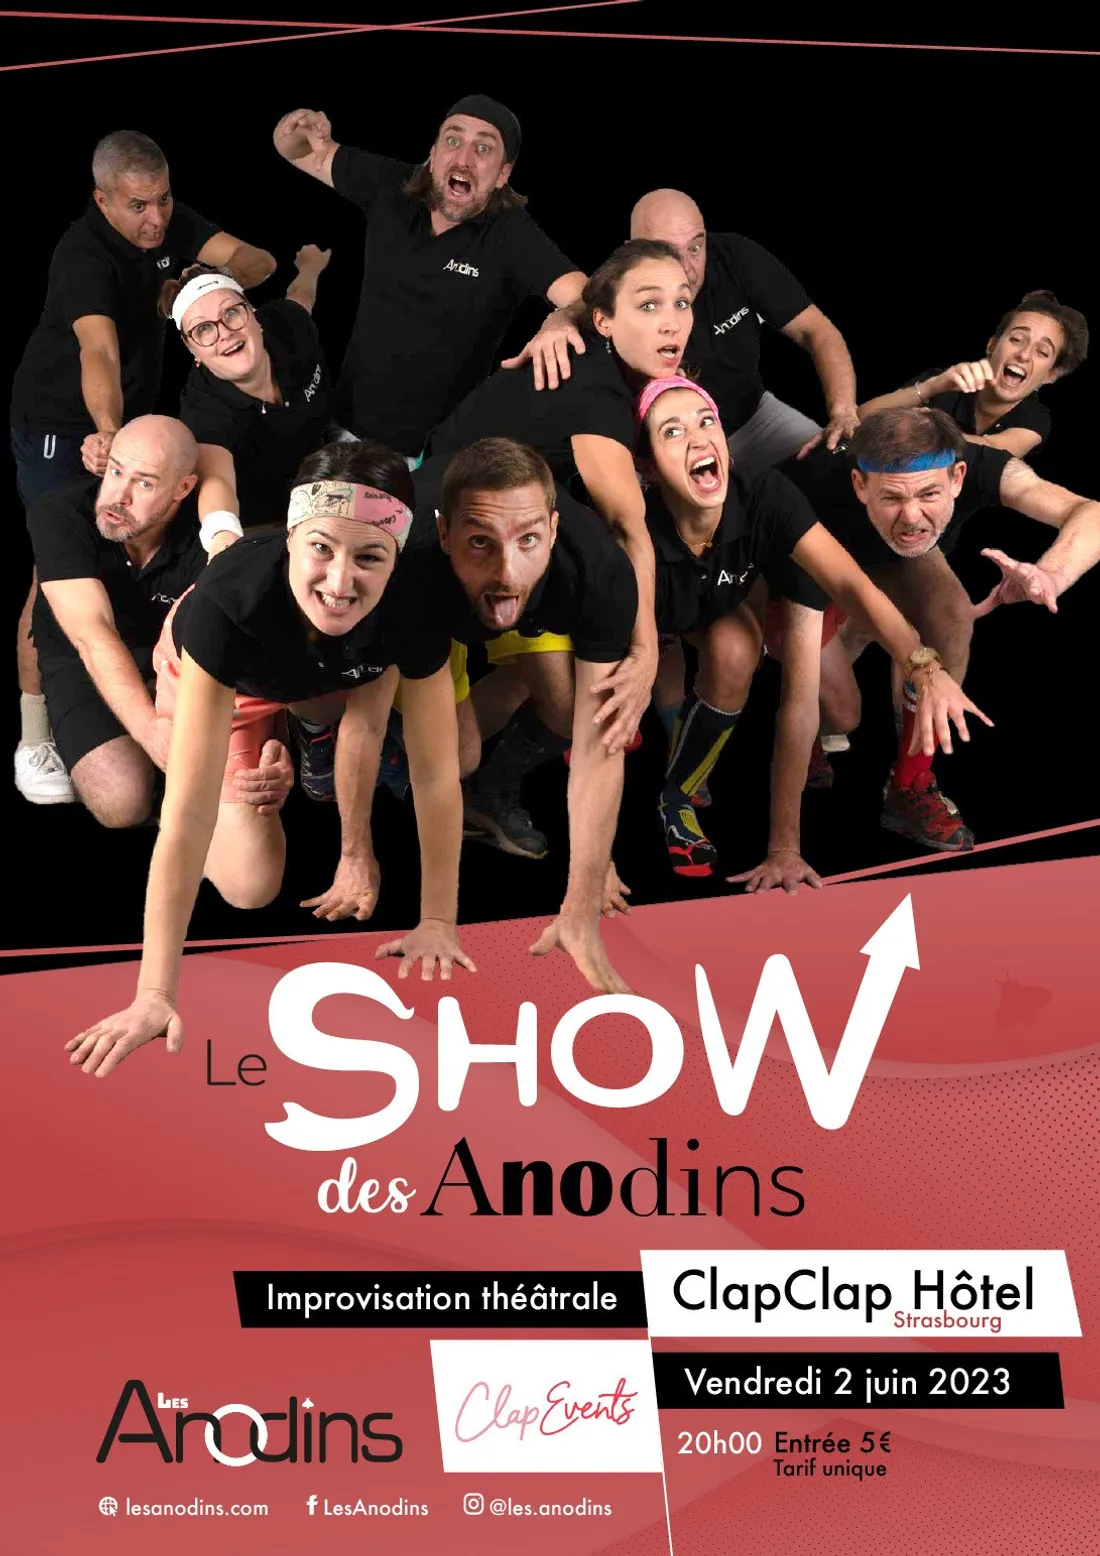 Le Show des Anodins au ClapClap Hôtel